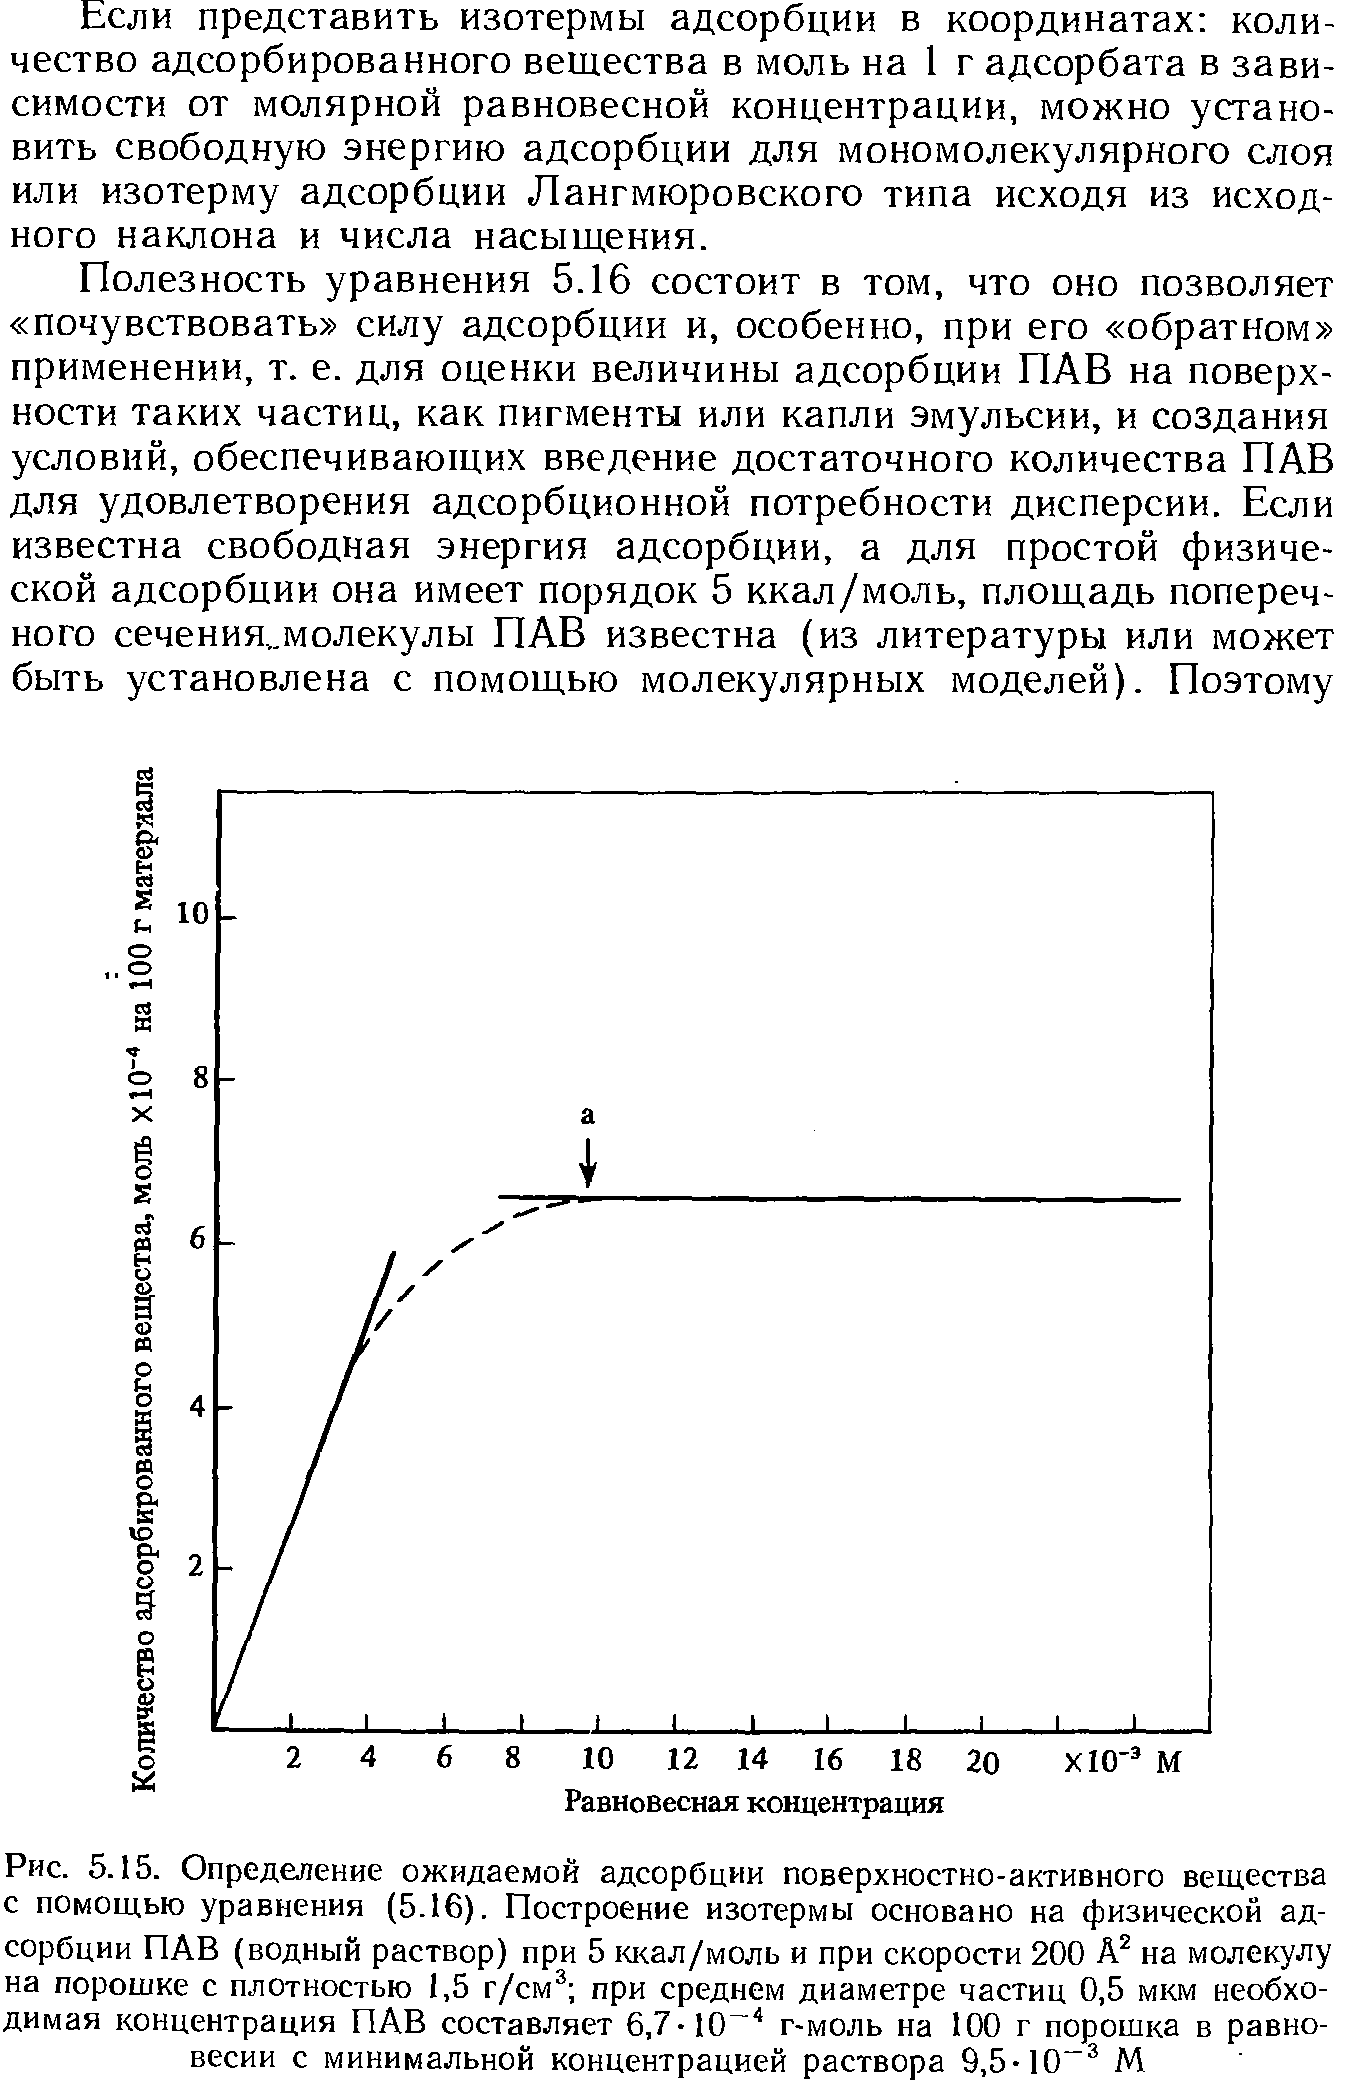 Рис. 5.15. Определение ожидаемой адсорбции <a href="/info/20689">поверхностно-активного вещества</a> с помощью уравнения (5.16). Построение изотермы основано на <a href="/info/7475">физической адсорбции</a> ПАВ (<a href="/info/48027">водный раствор</a>) при 5 ккал/моль и при скорости 200 на молекулу на порошке с плотностью 1,5 г/см= при <a href="/info/417941">среднем диаметре частиц</a> 0,5 мкм необходимая концентрация ПАВ составляет 6.7-10 г-моль на 100 г порошка в равновесии с минимальной концентрацией раствора 9,5-10"= М
